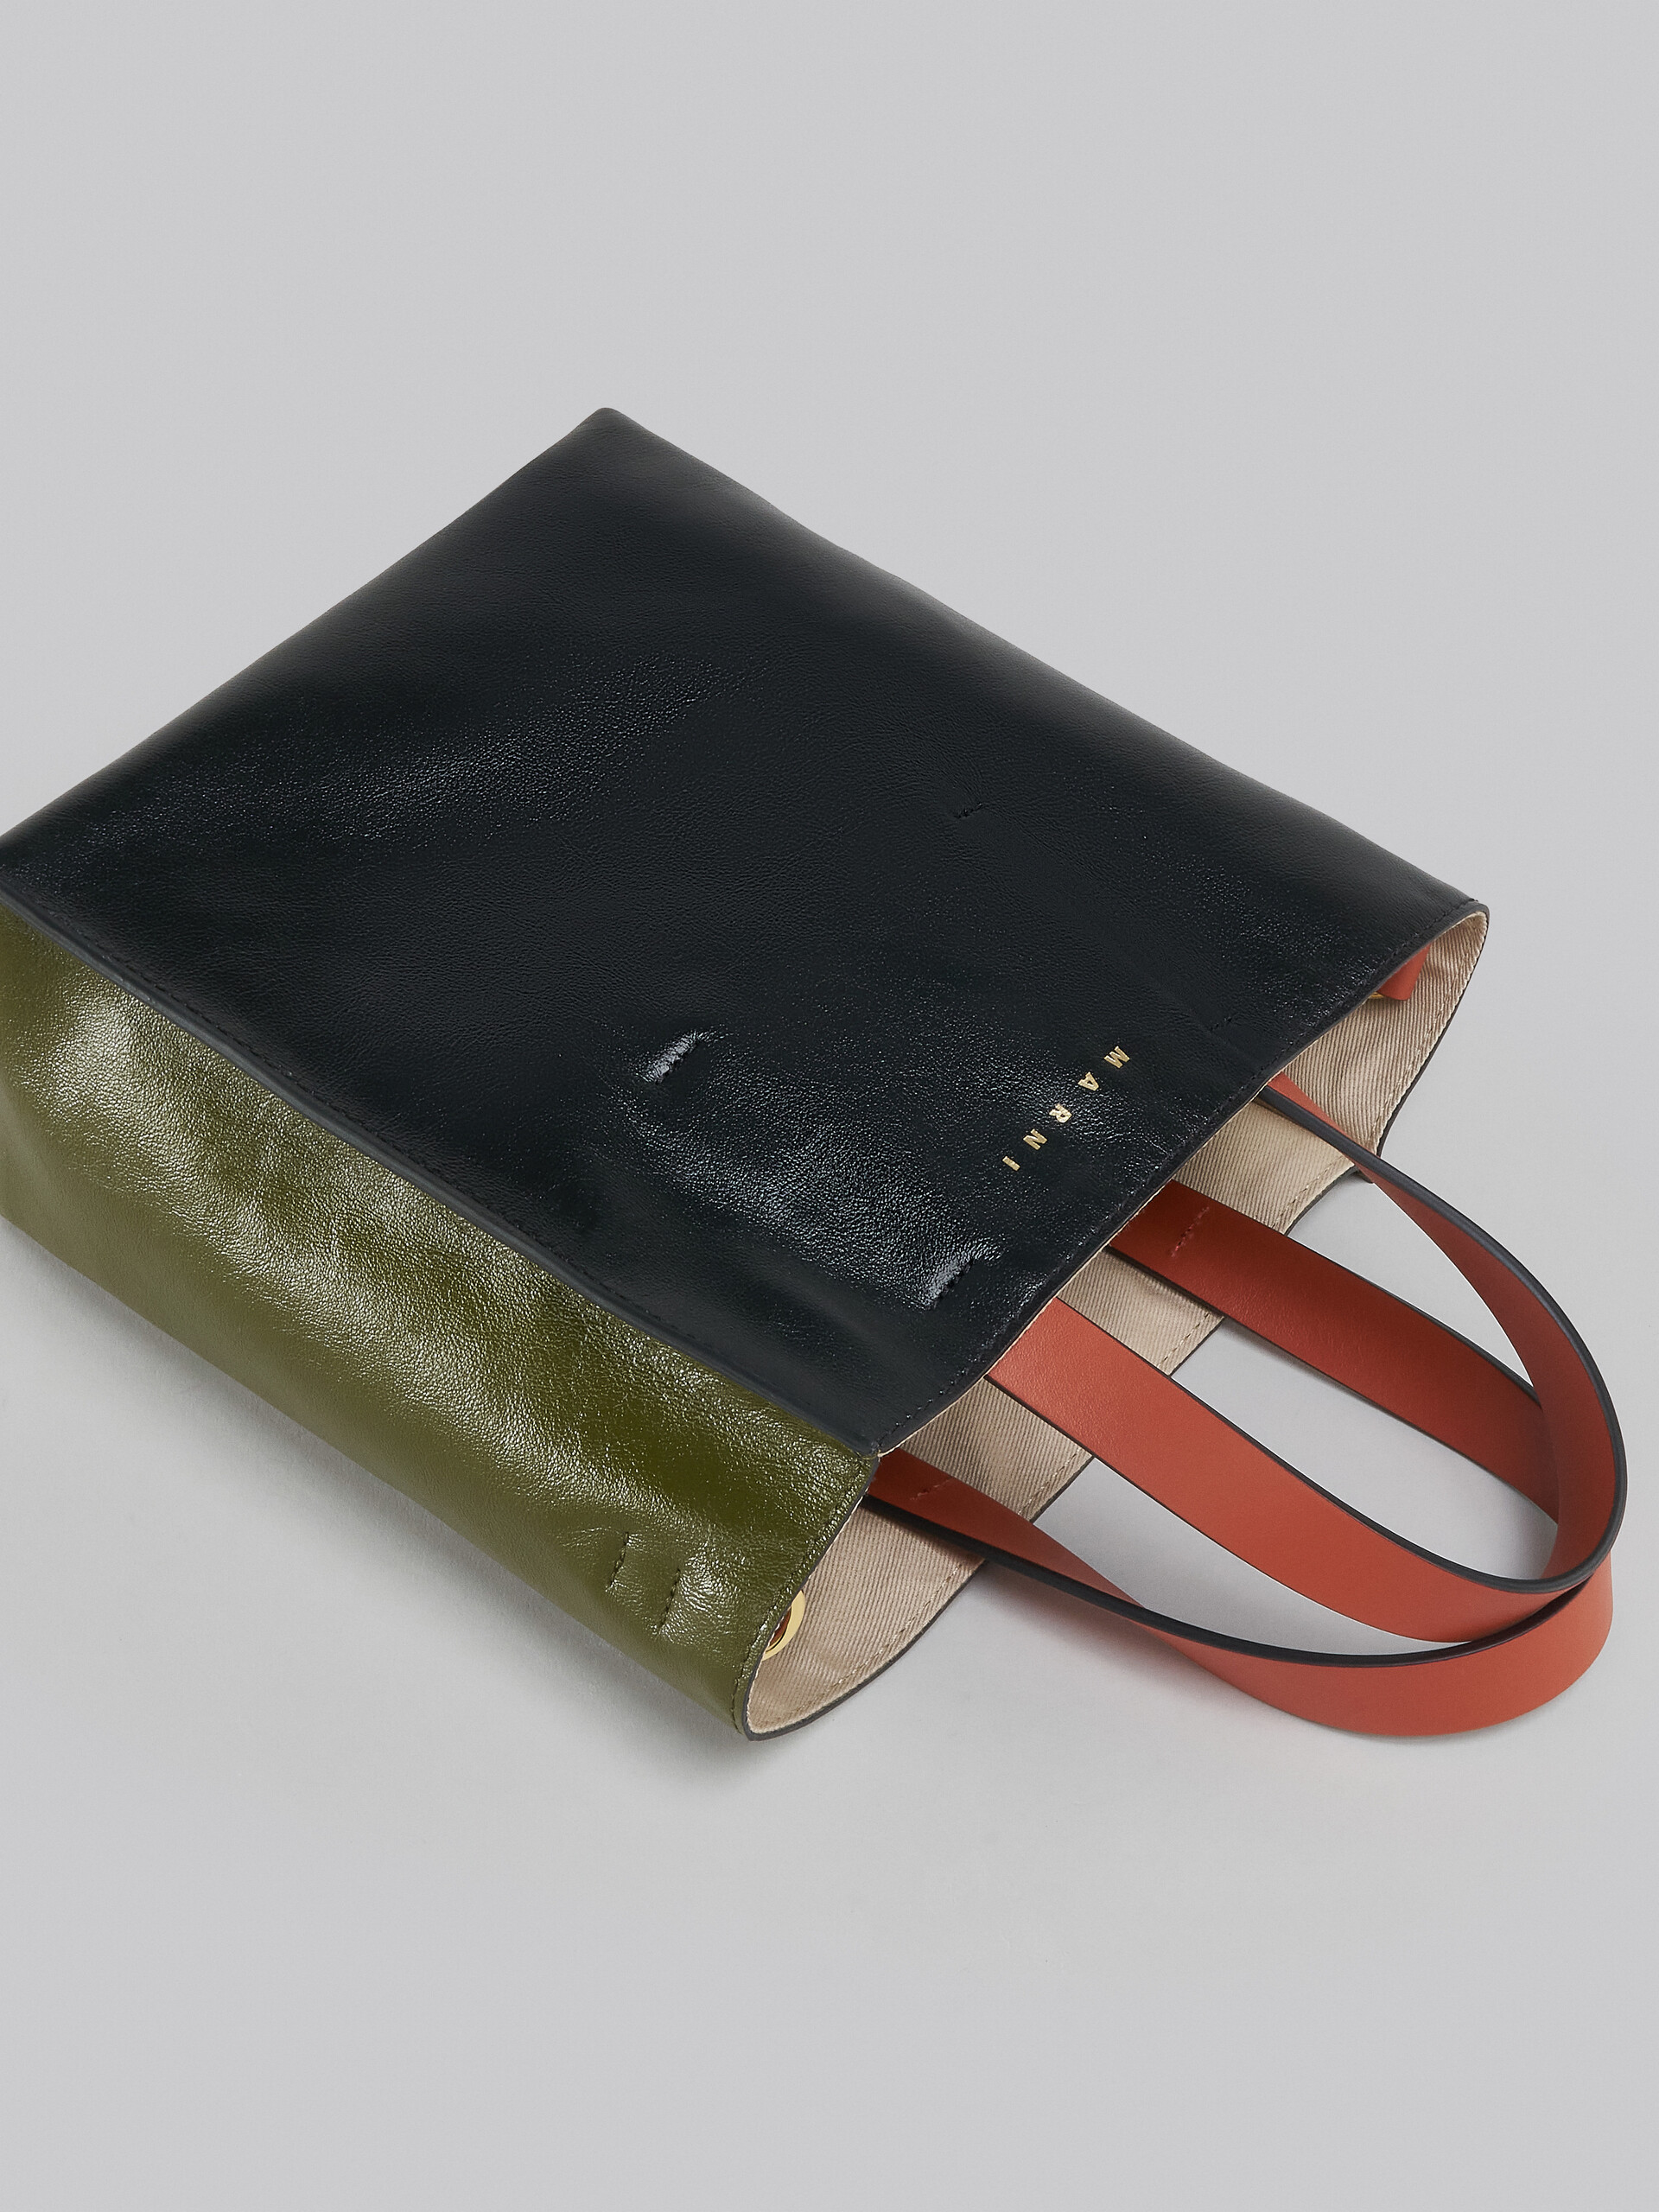 Mini-sac Museo Soft en cuir gris, noir et rouge - Sacs cabas - Image 5